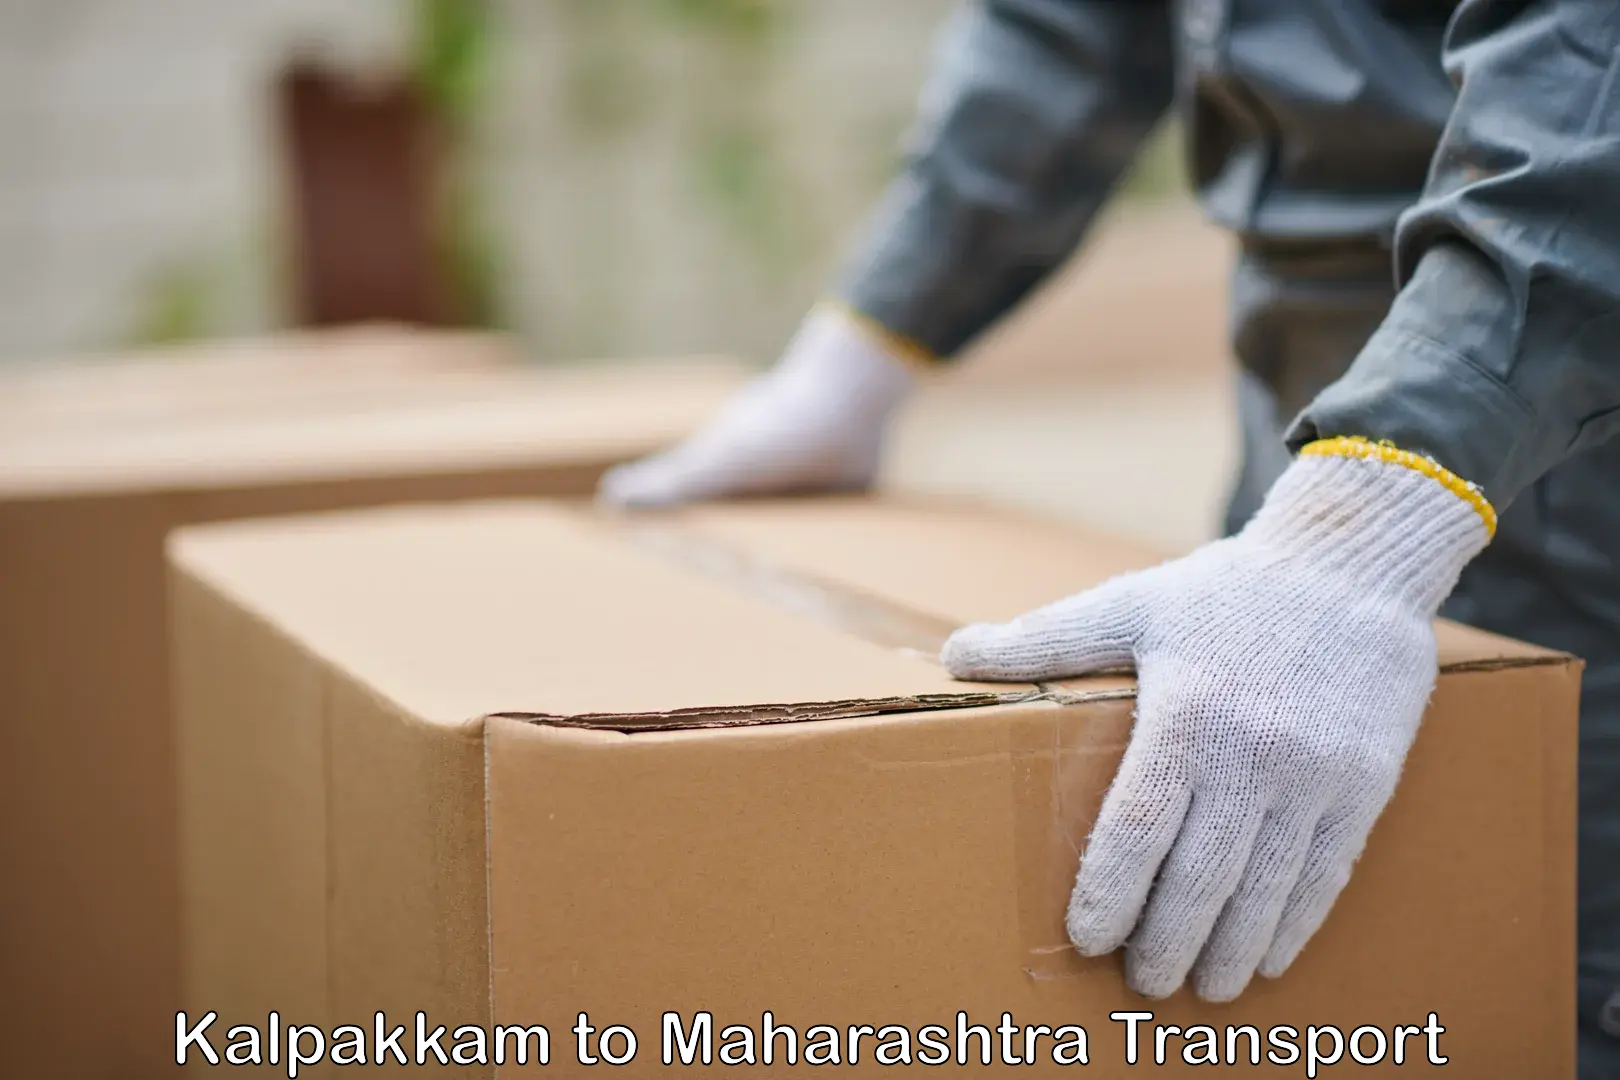 Domestic goods transportation services Kalpakkam to Maharashtra